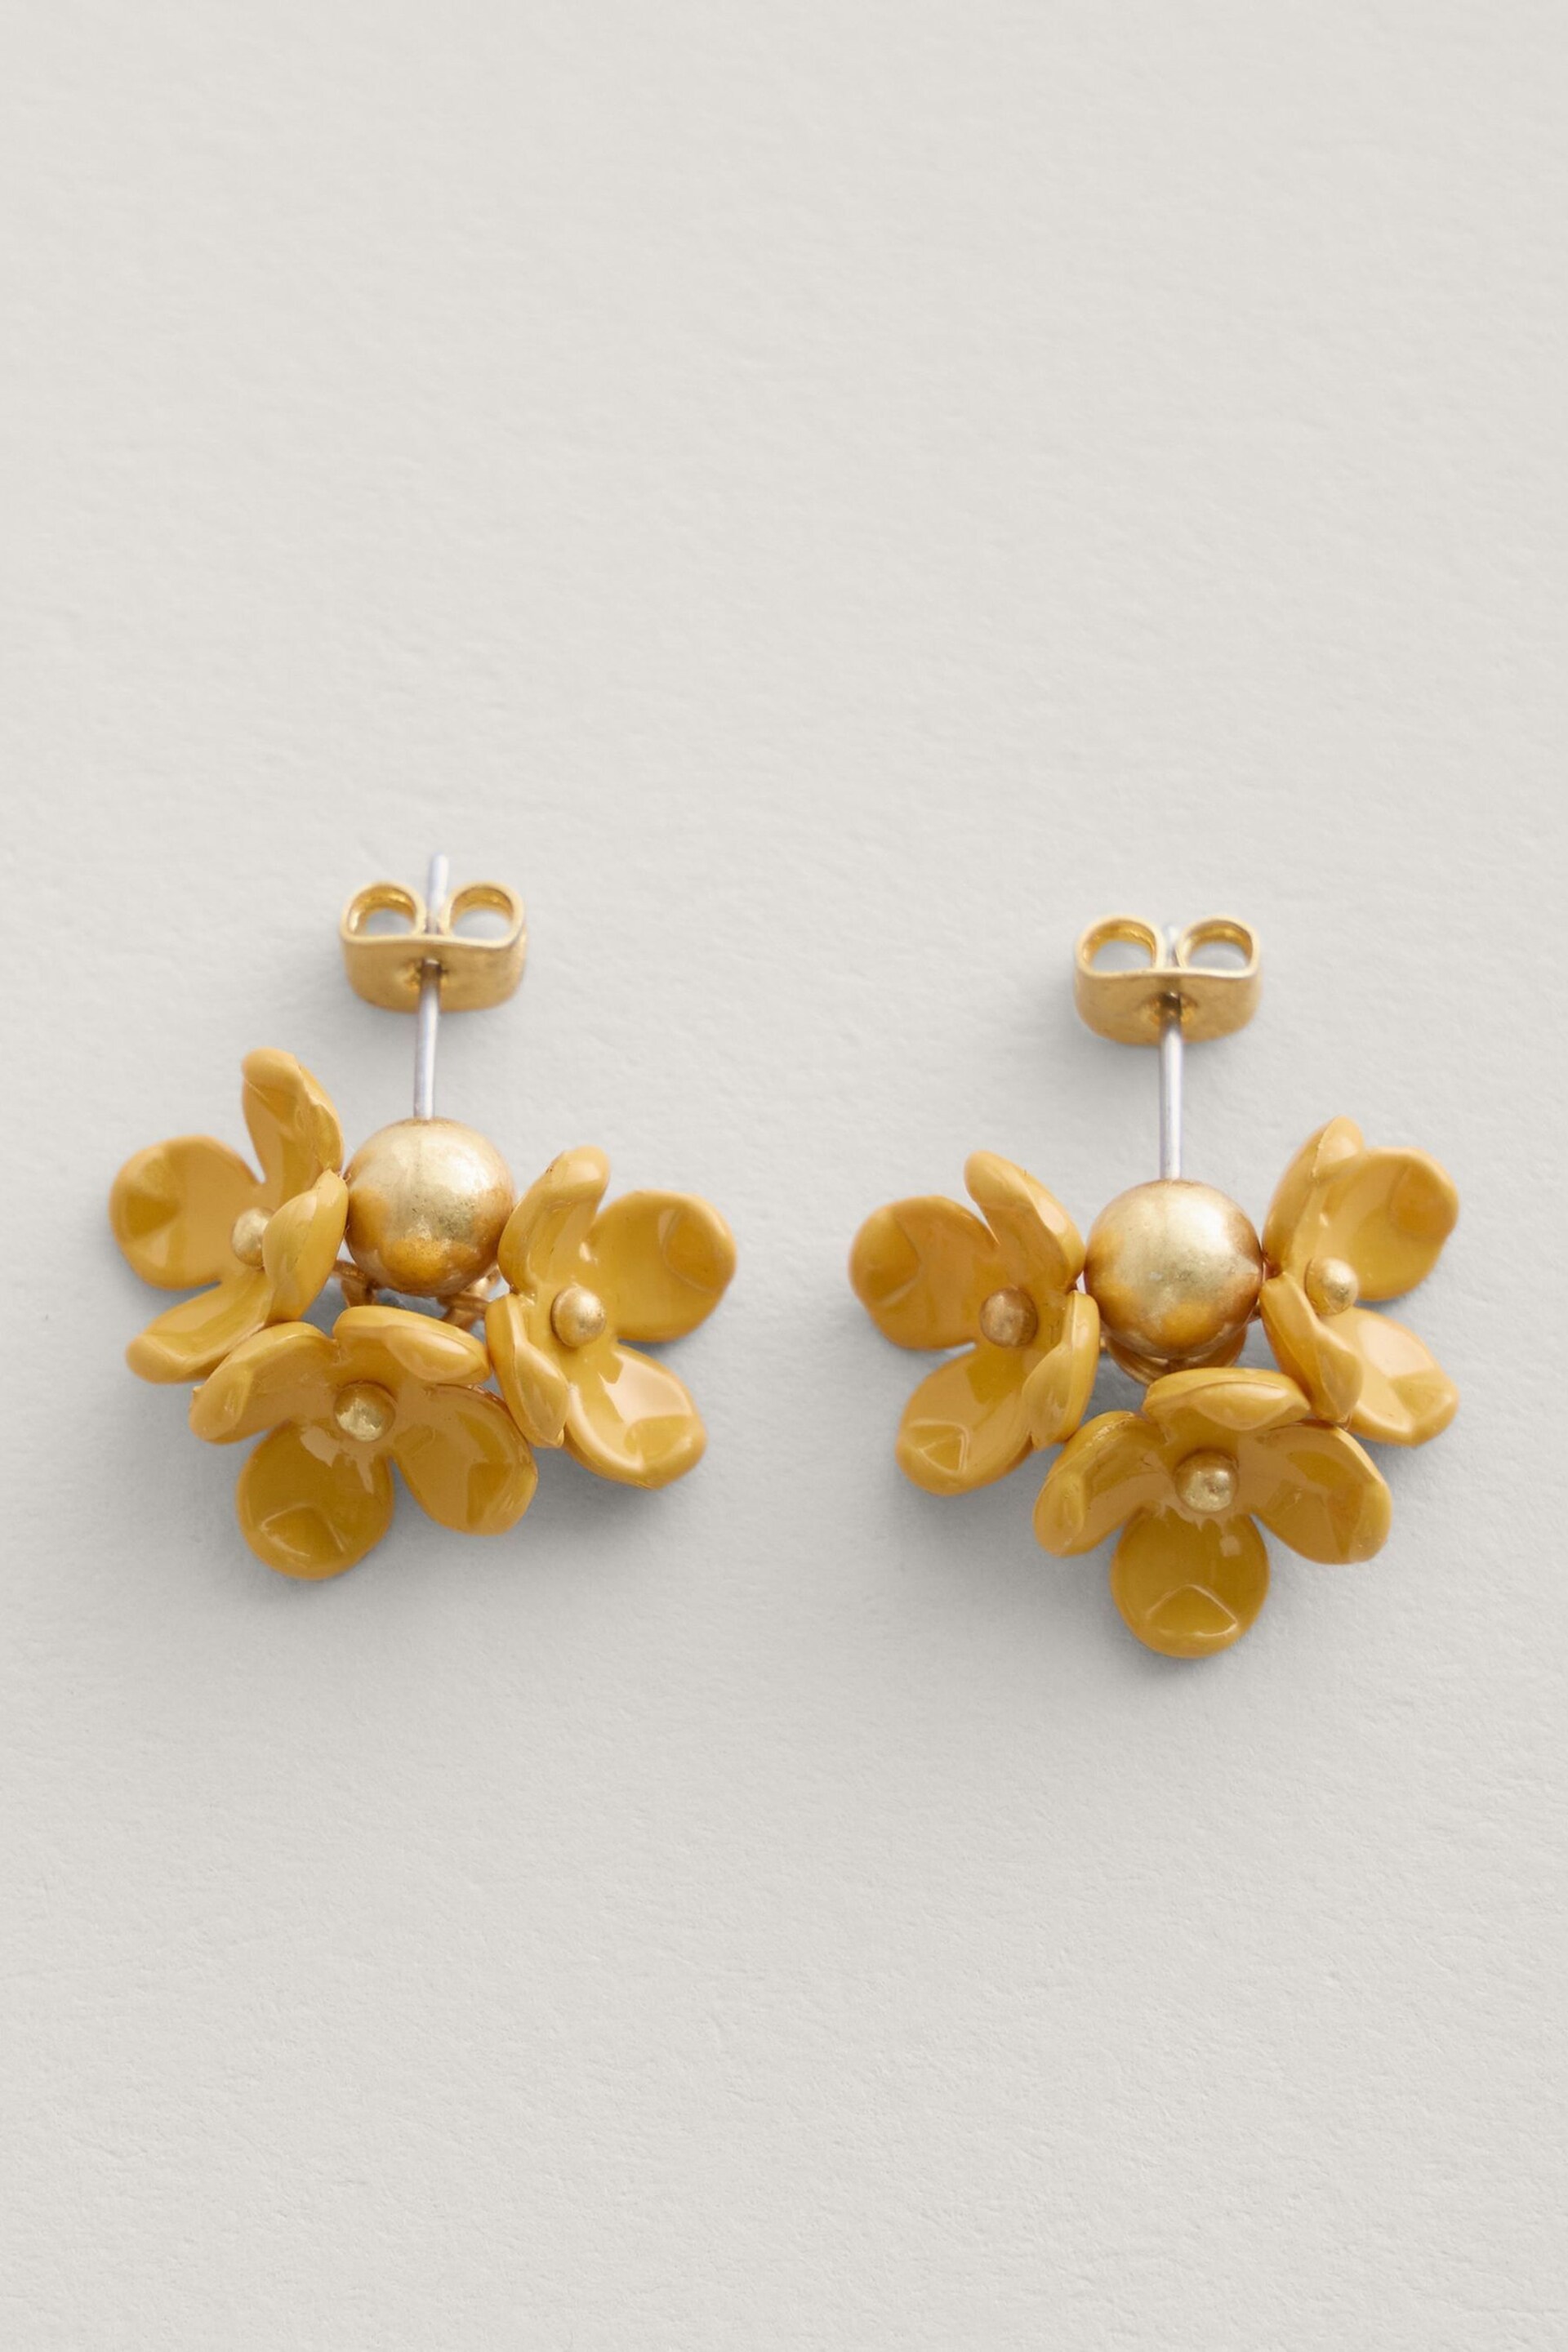 Seasalt Cornwall Yellow Corsage Flower Bead Earrings - Image 1 of 6